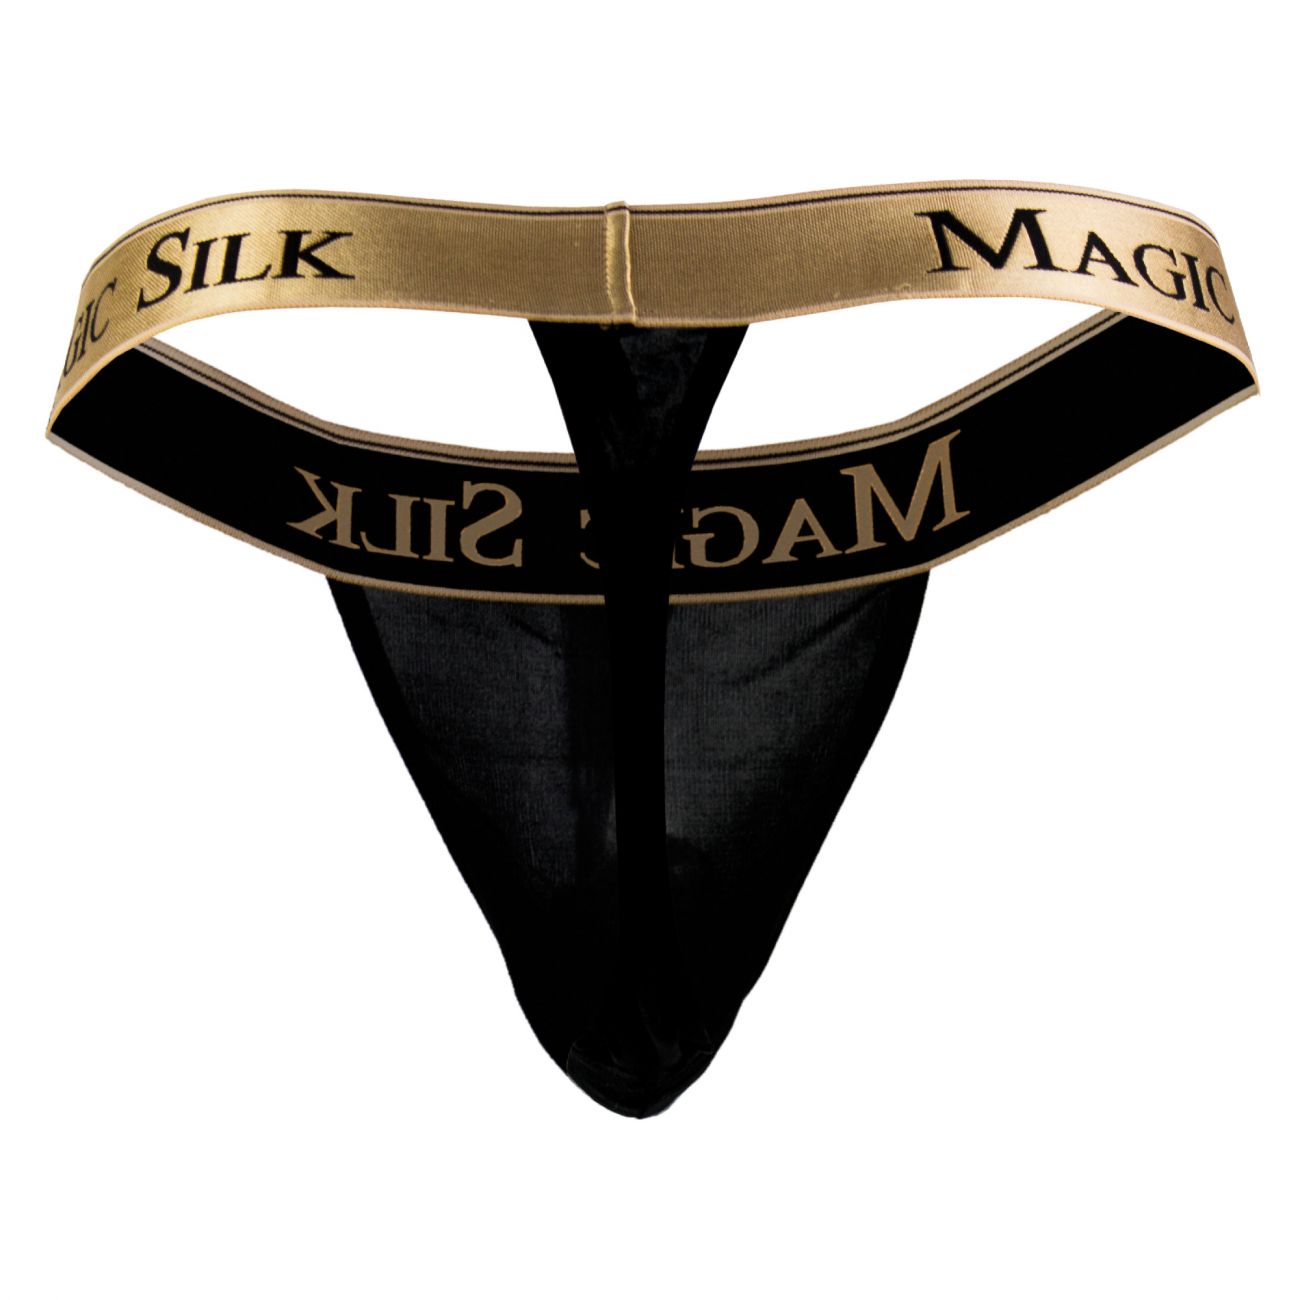 Magic Silk Silk Knit Micro Thong